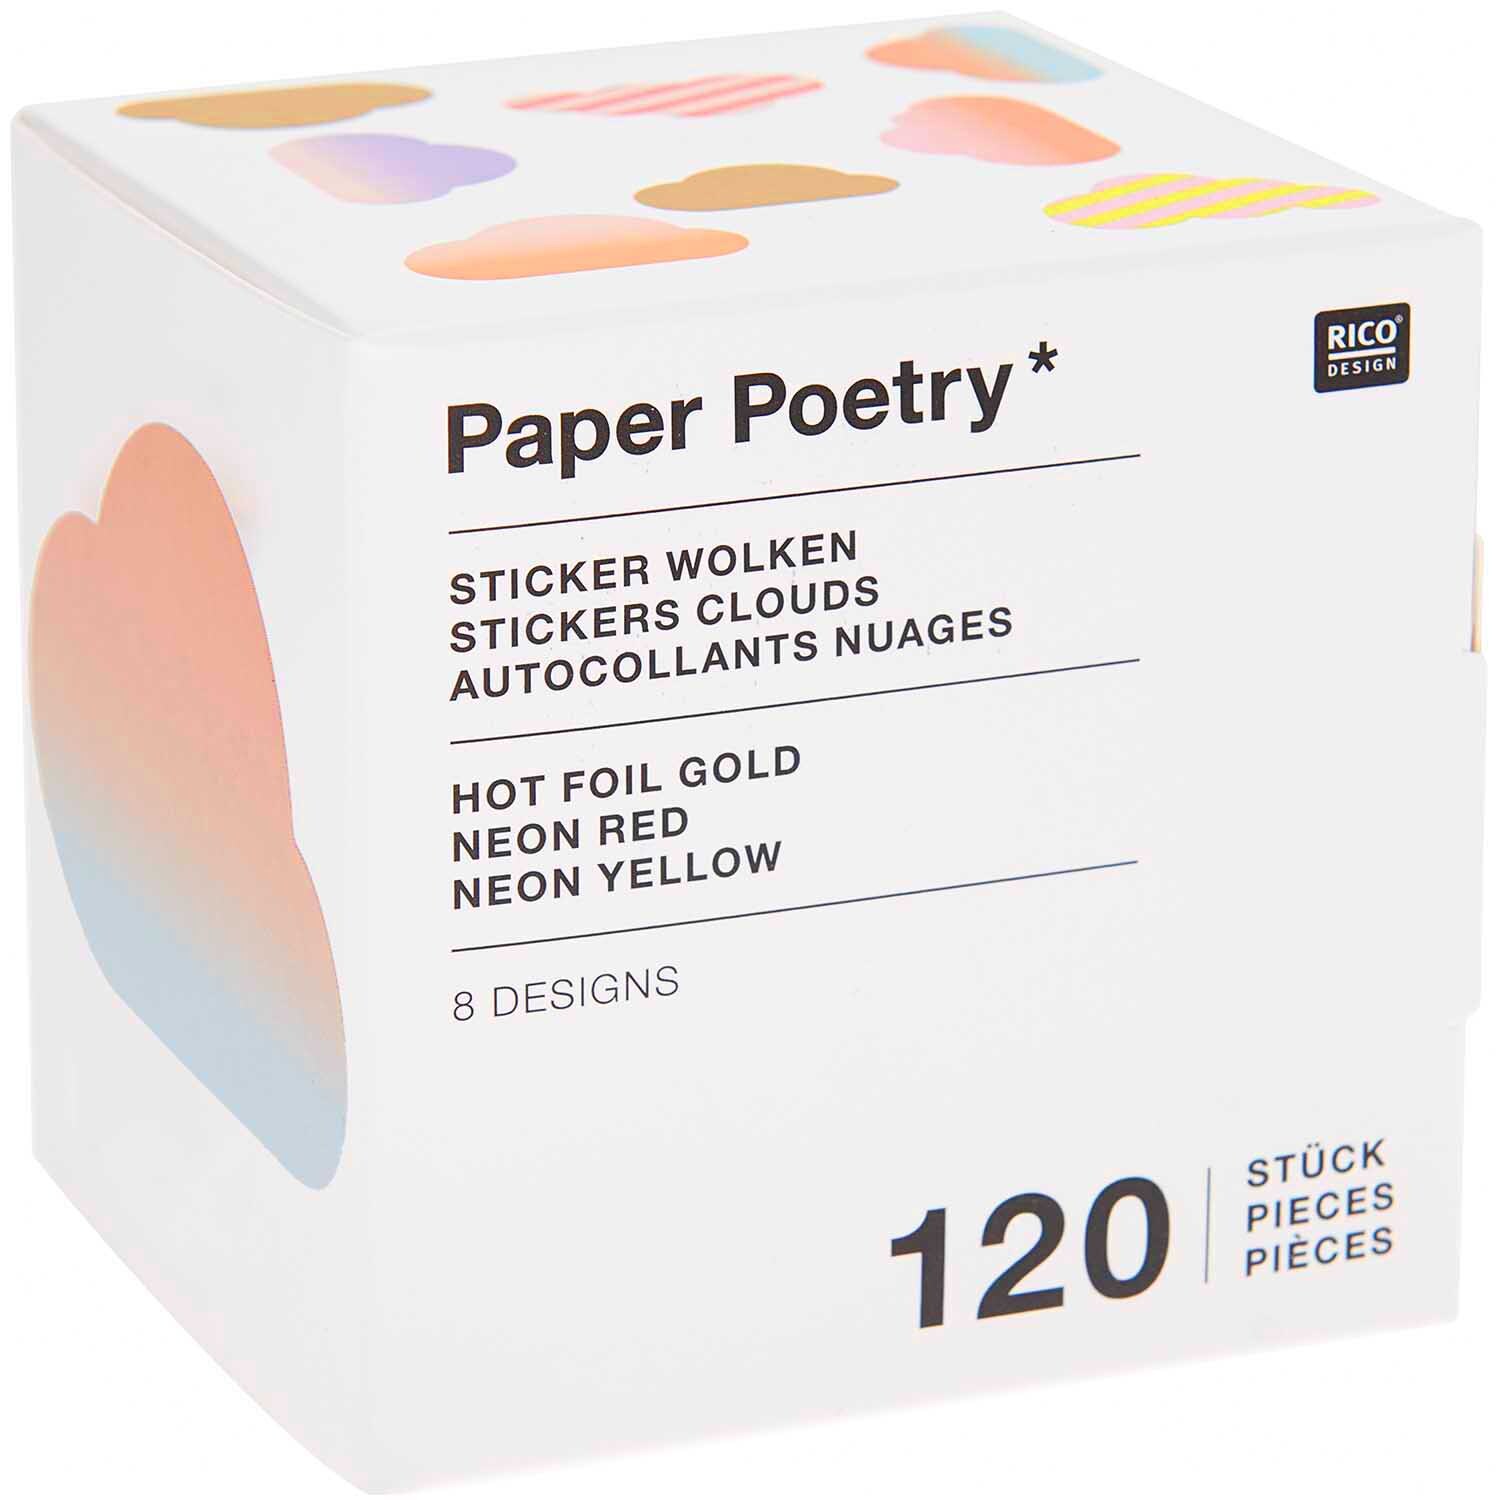 Paper Poetry Sticker Wolken 5,5cm 120 Stück auf der Rolle